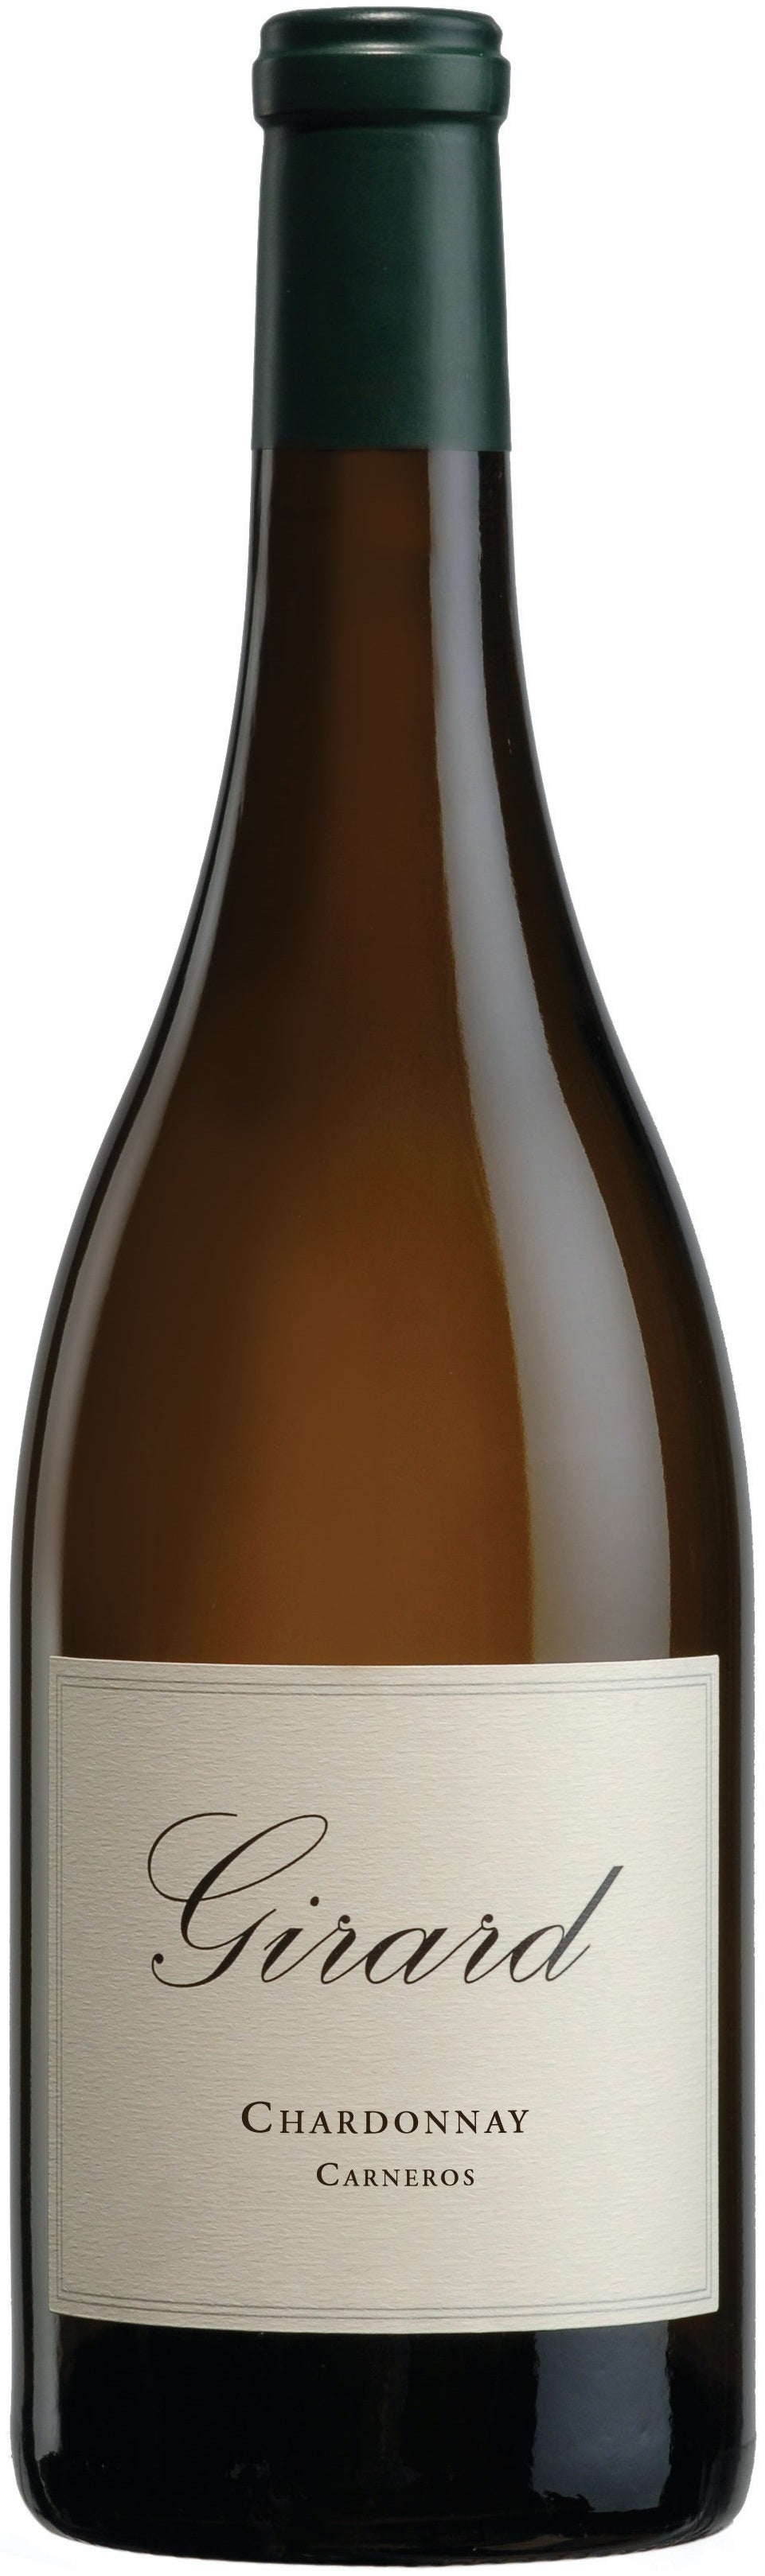 Vino Blanco Girard Chardonnay 750 ml